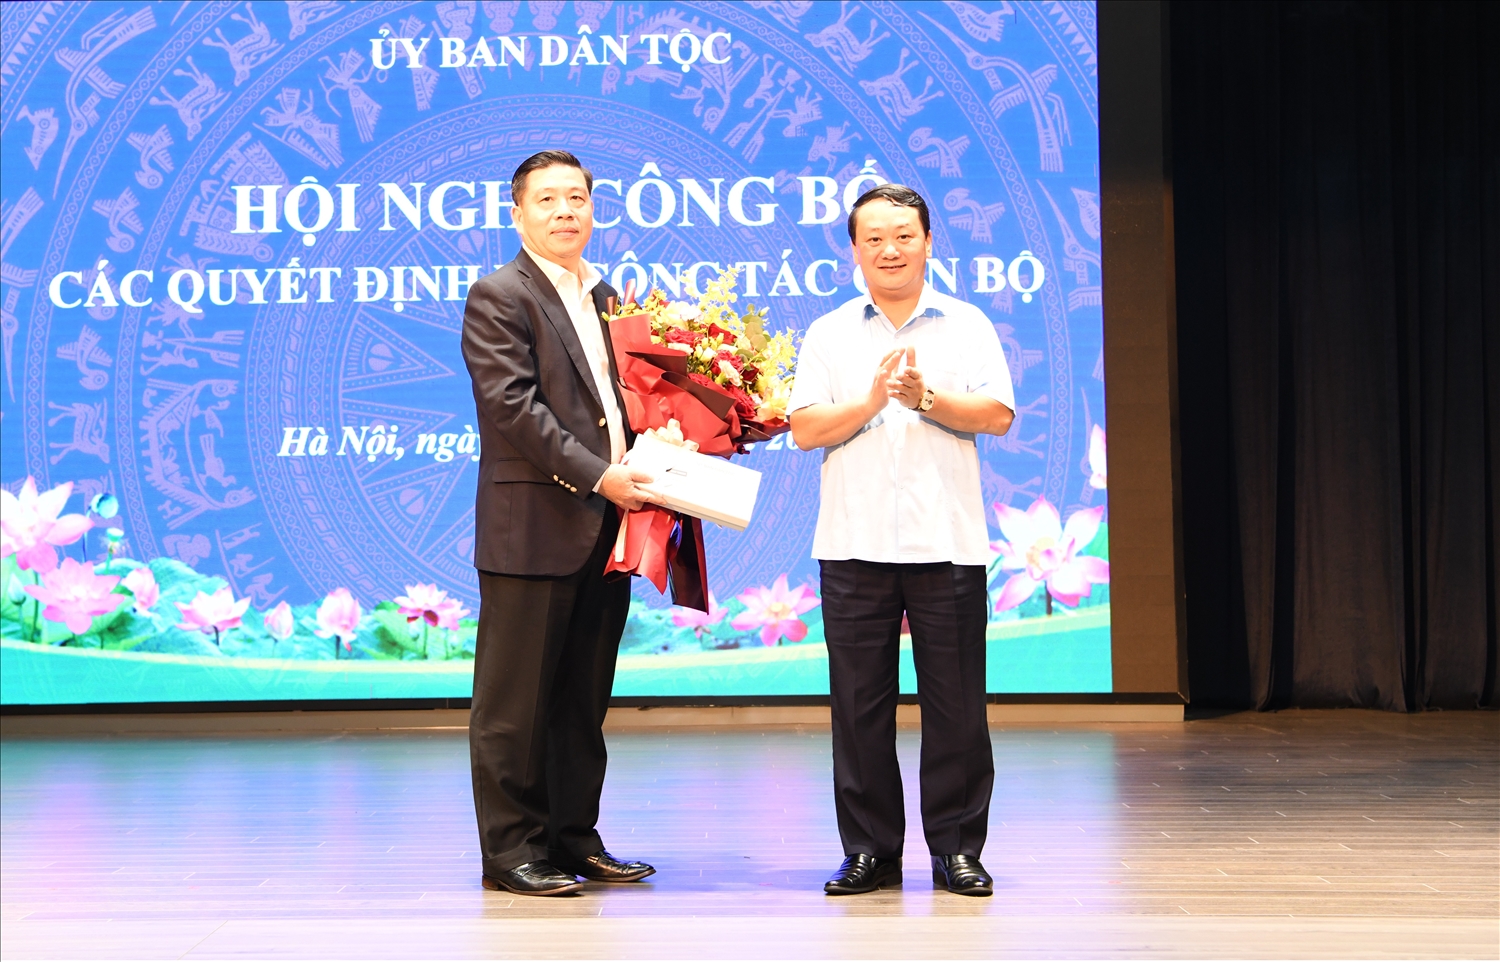 Bộ trưởng, Chủ nhiệm Hầu A Lềnh trao Quyết định nghỉ hưu cho ông Lê Sơn Hải, Thứ trưởng, Phó Chủ nhiệm UBDT